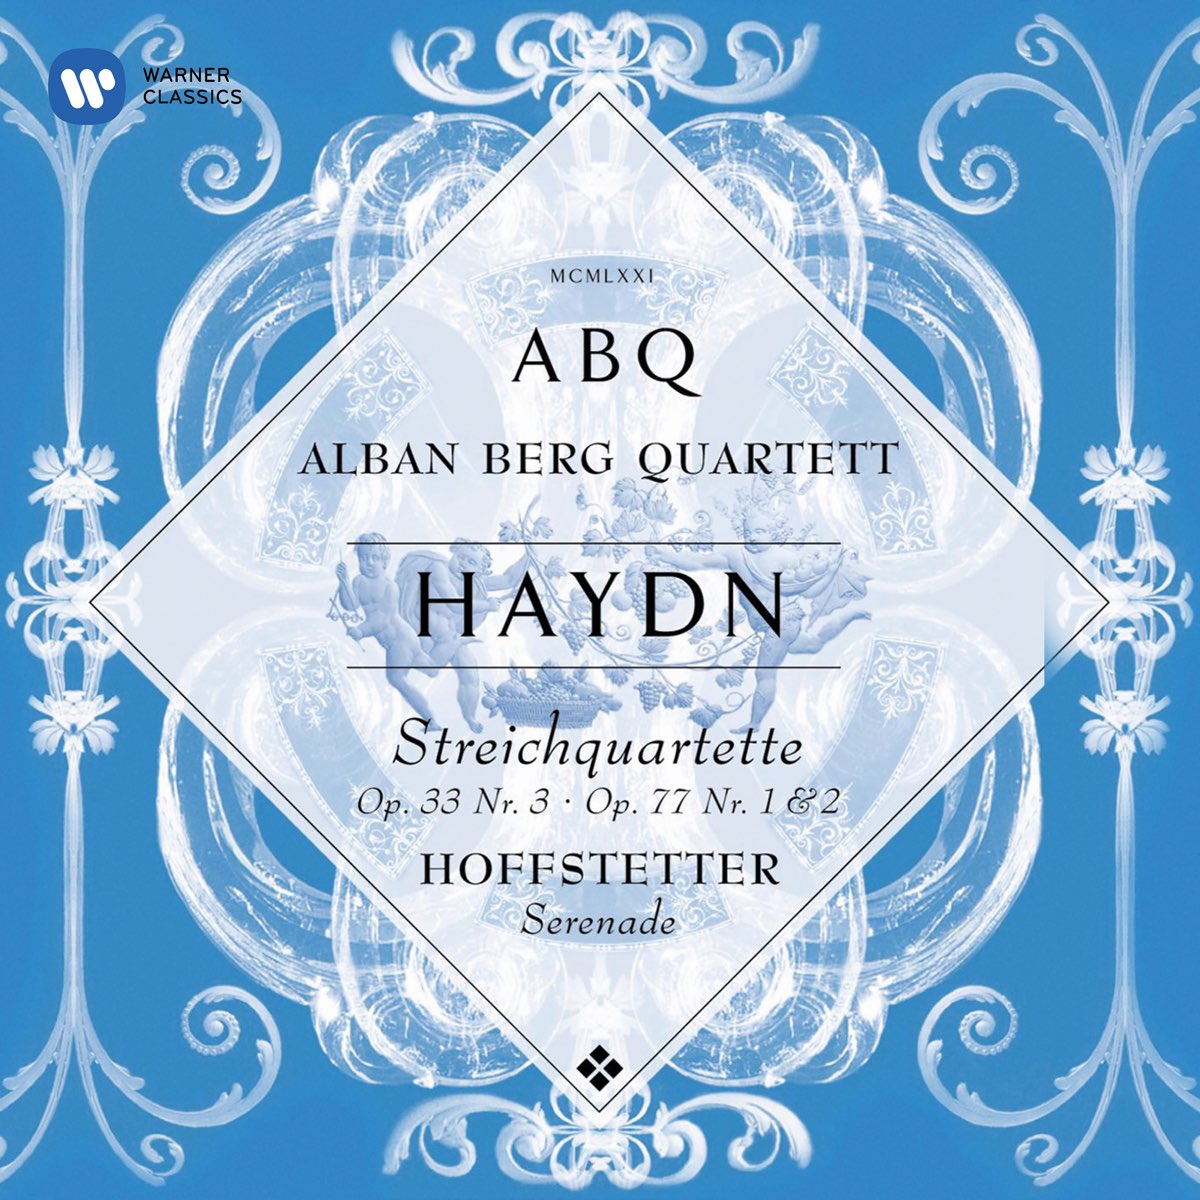 Haydn: String Quartets, Op. 33 No. 3 "The Bird" - Op. 77 Nos. 1 & 2 by Alban  Berg Quartett on Apple Music